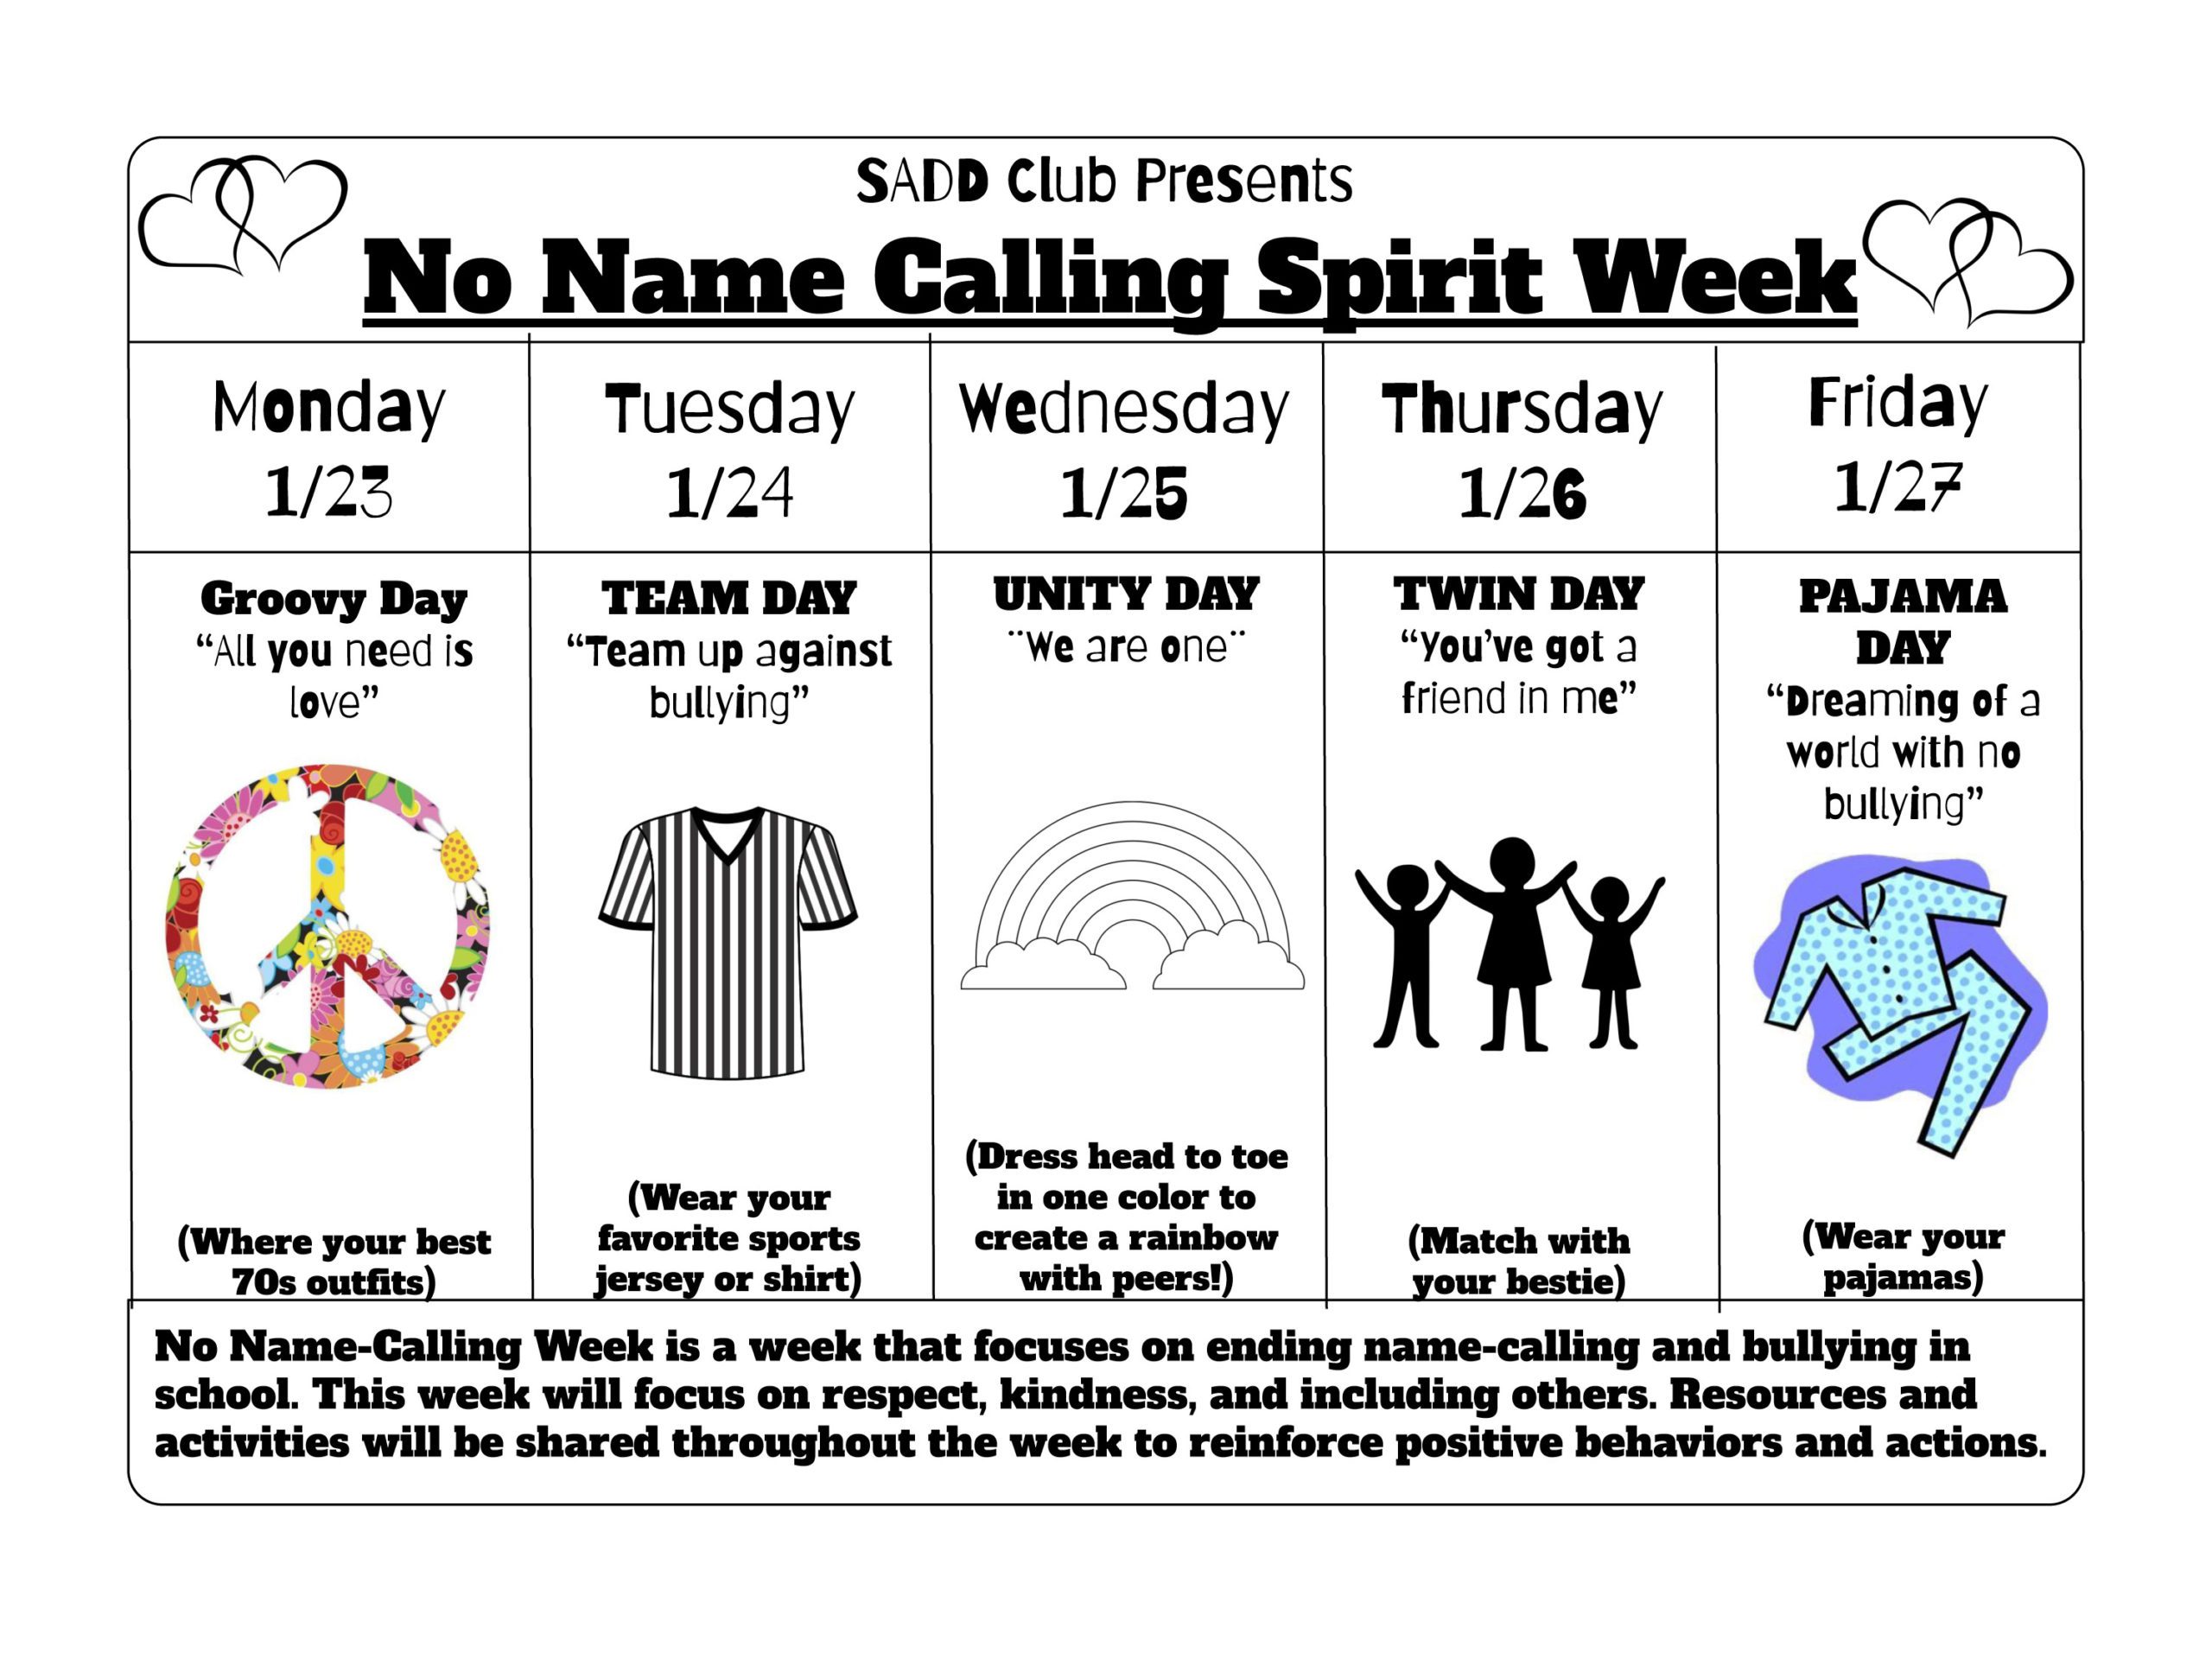 No Name Calling Spirit Week flyer